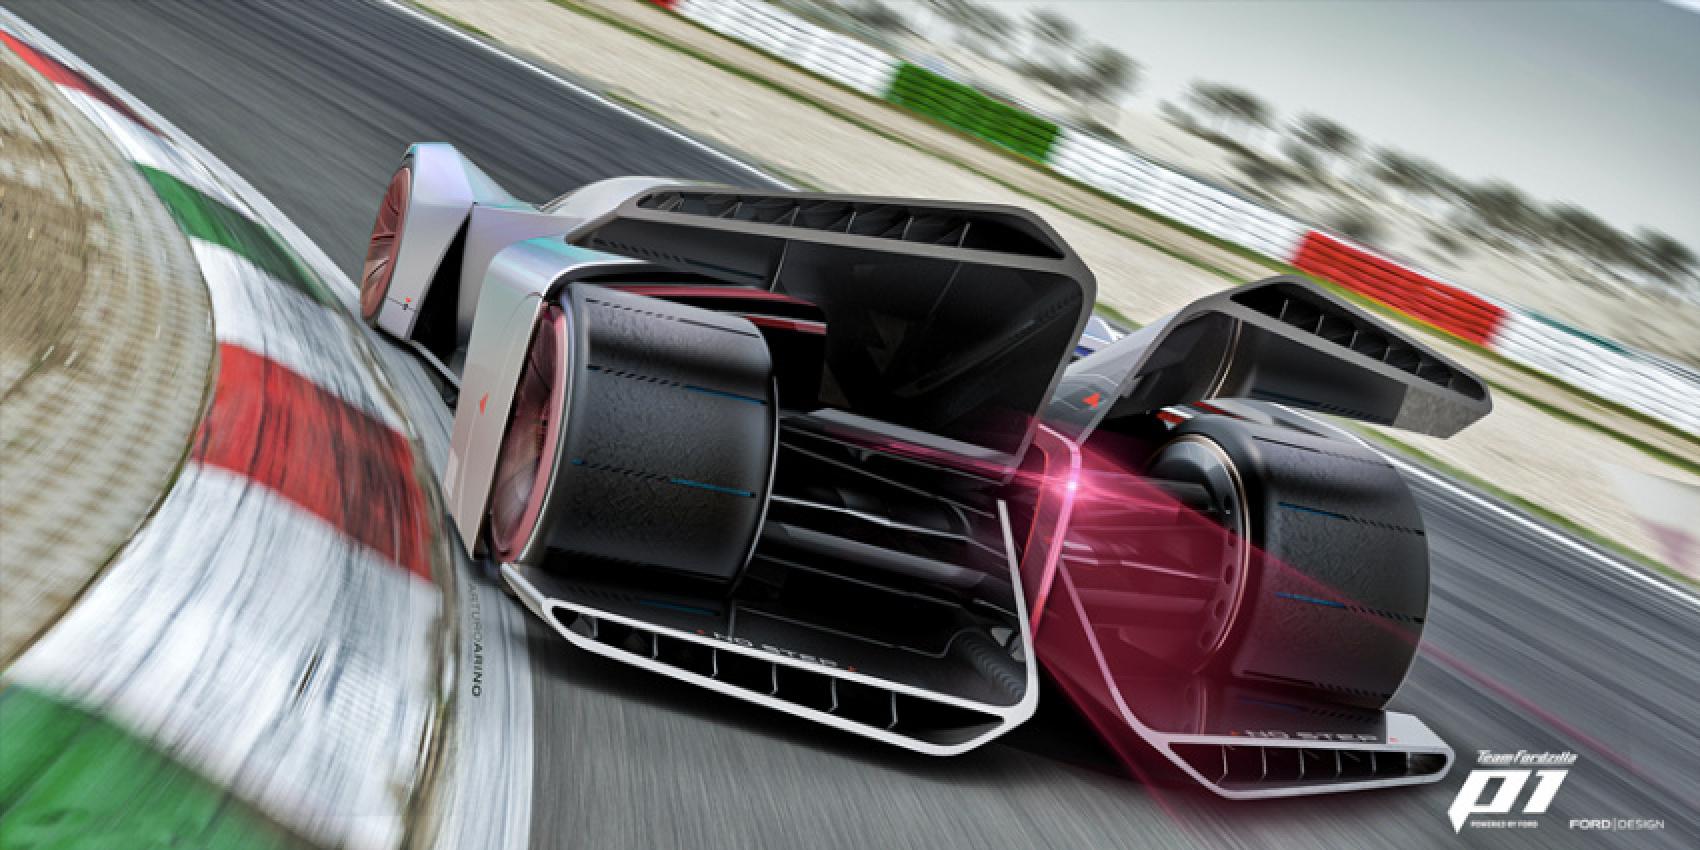 autos, cars, ford, digital motorsports, racing simulator, team fordzilla, team fordzilla p1, virtual racing car, team fordzilla reveals ultimate virtual racing car (w/video)